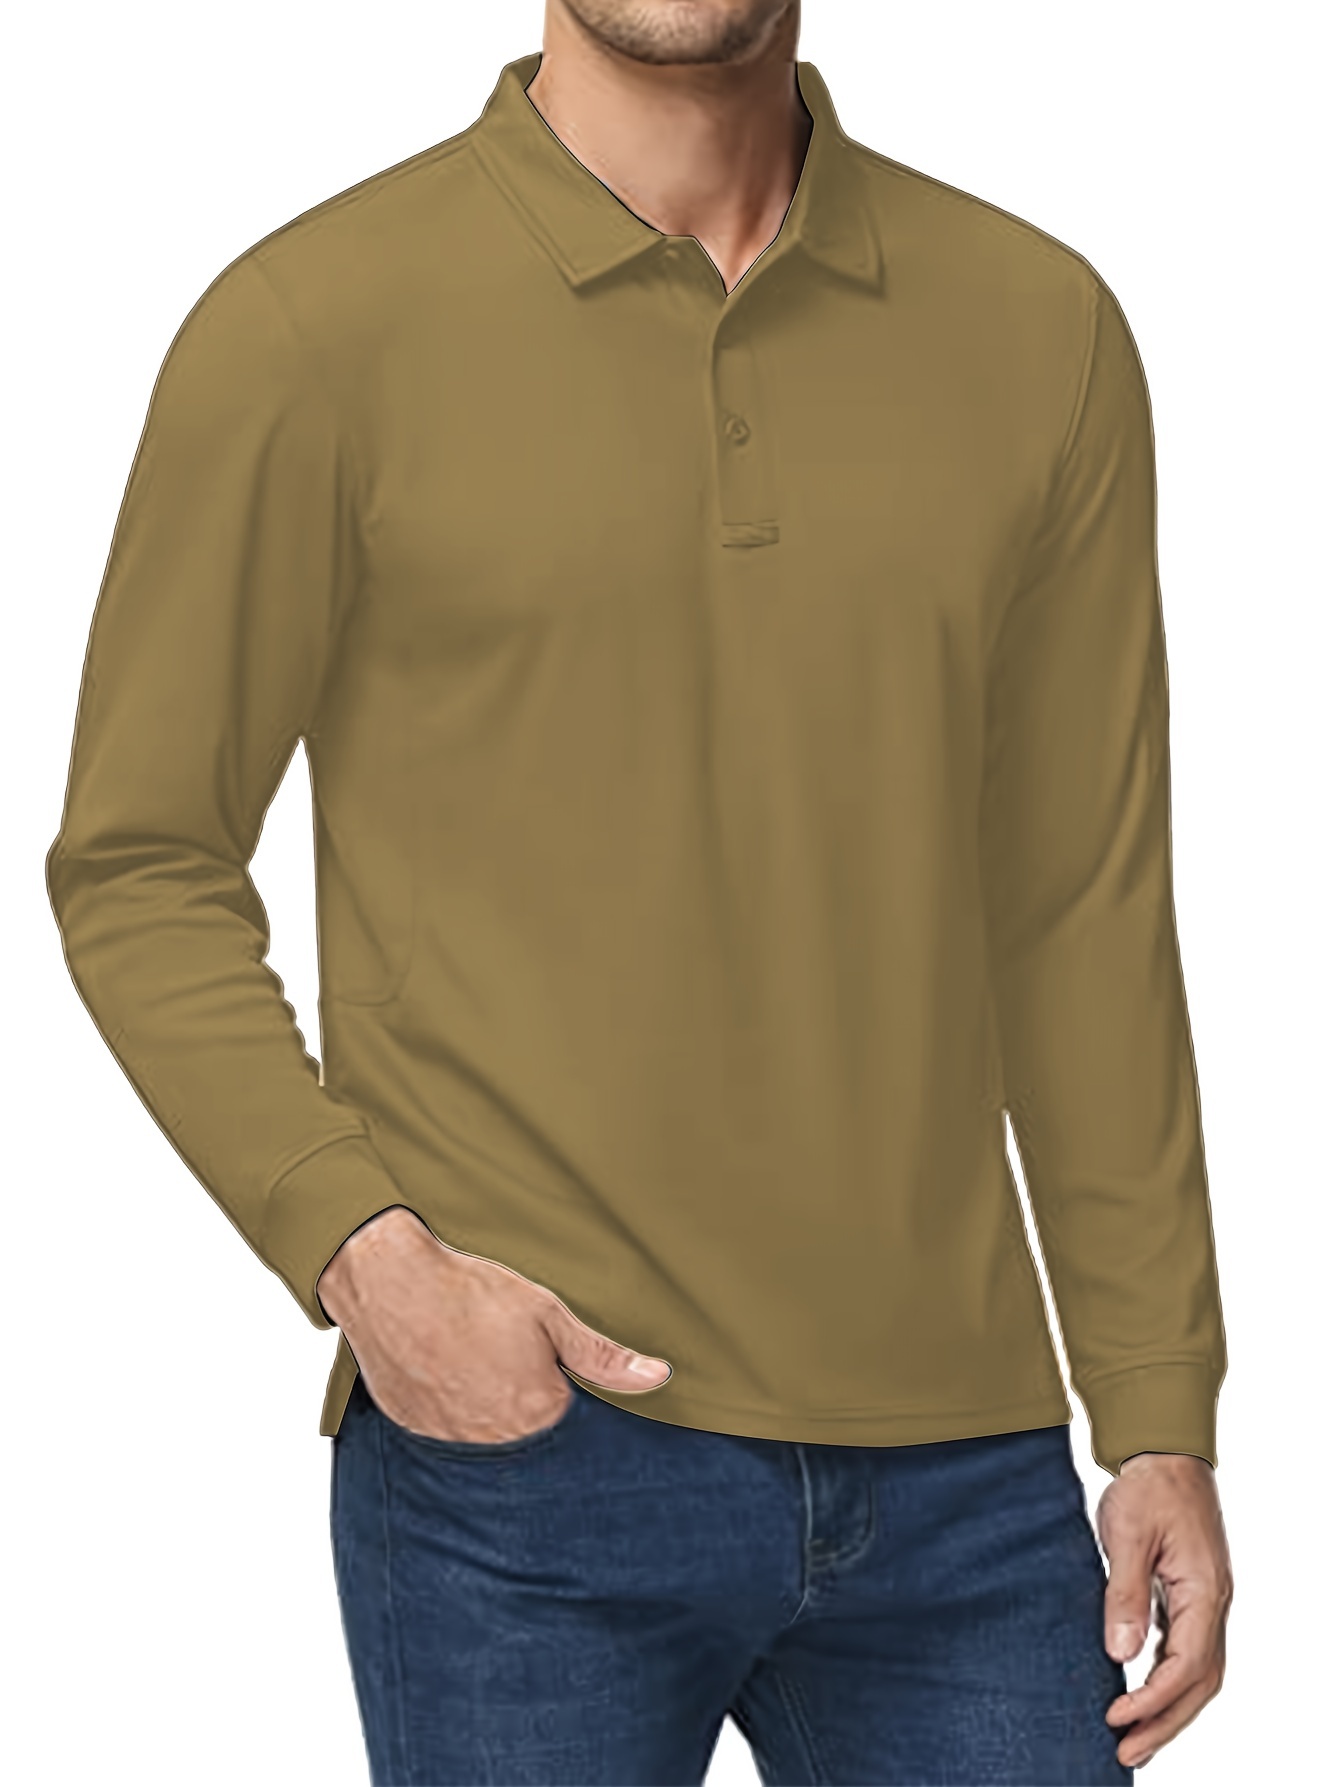 Mens Fashion Polo Shirt Casual V Neck Long-Sleeve Golf Shirt Slim